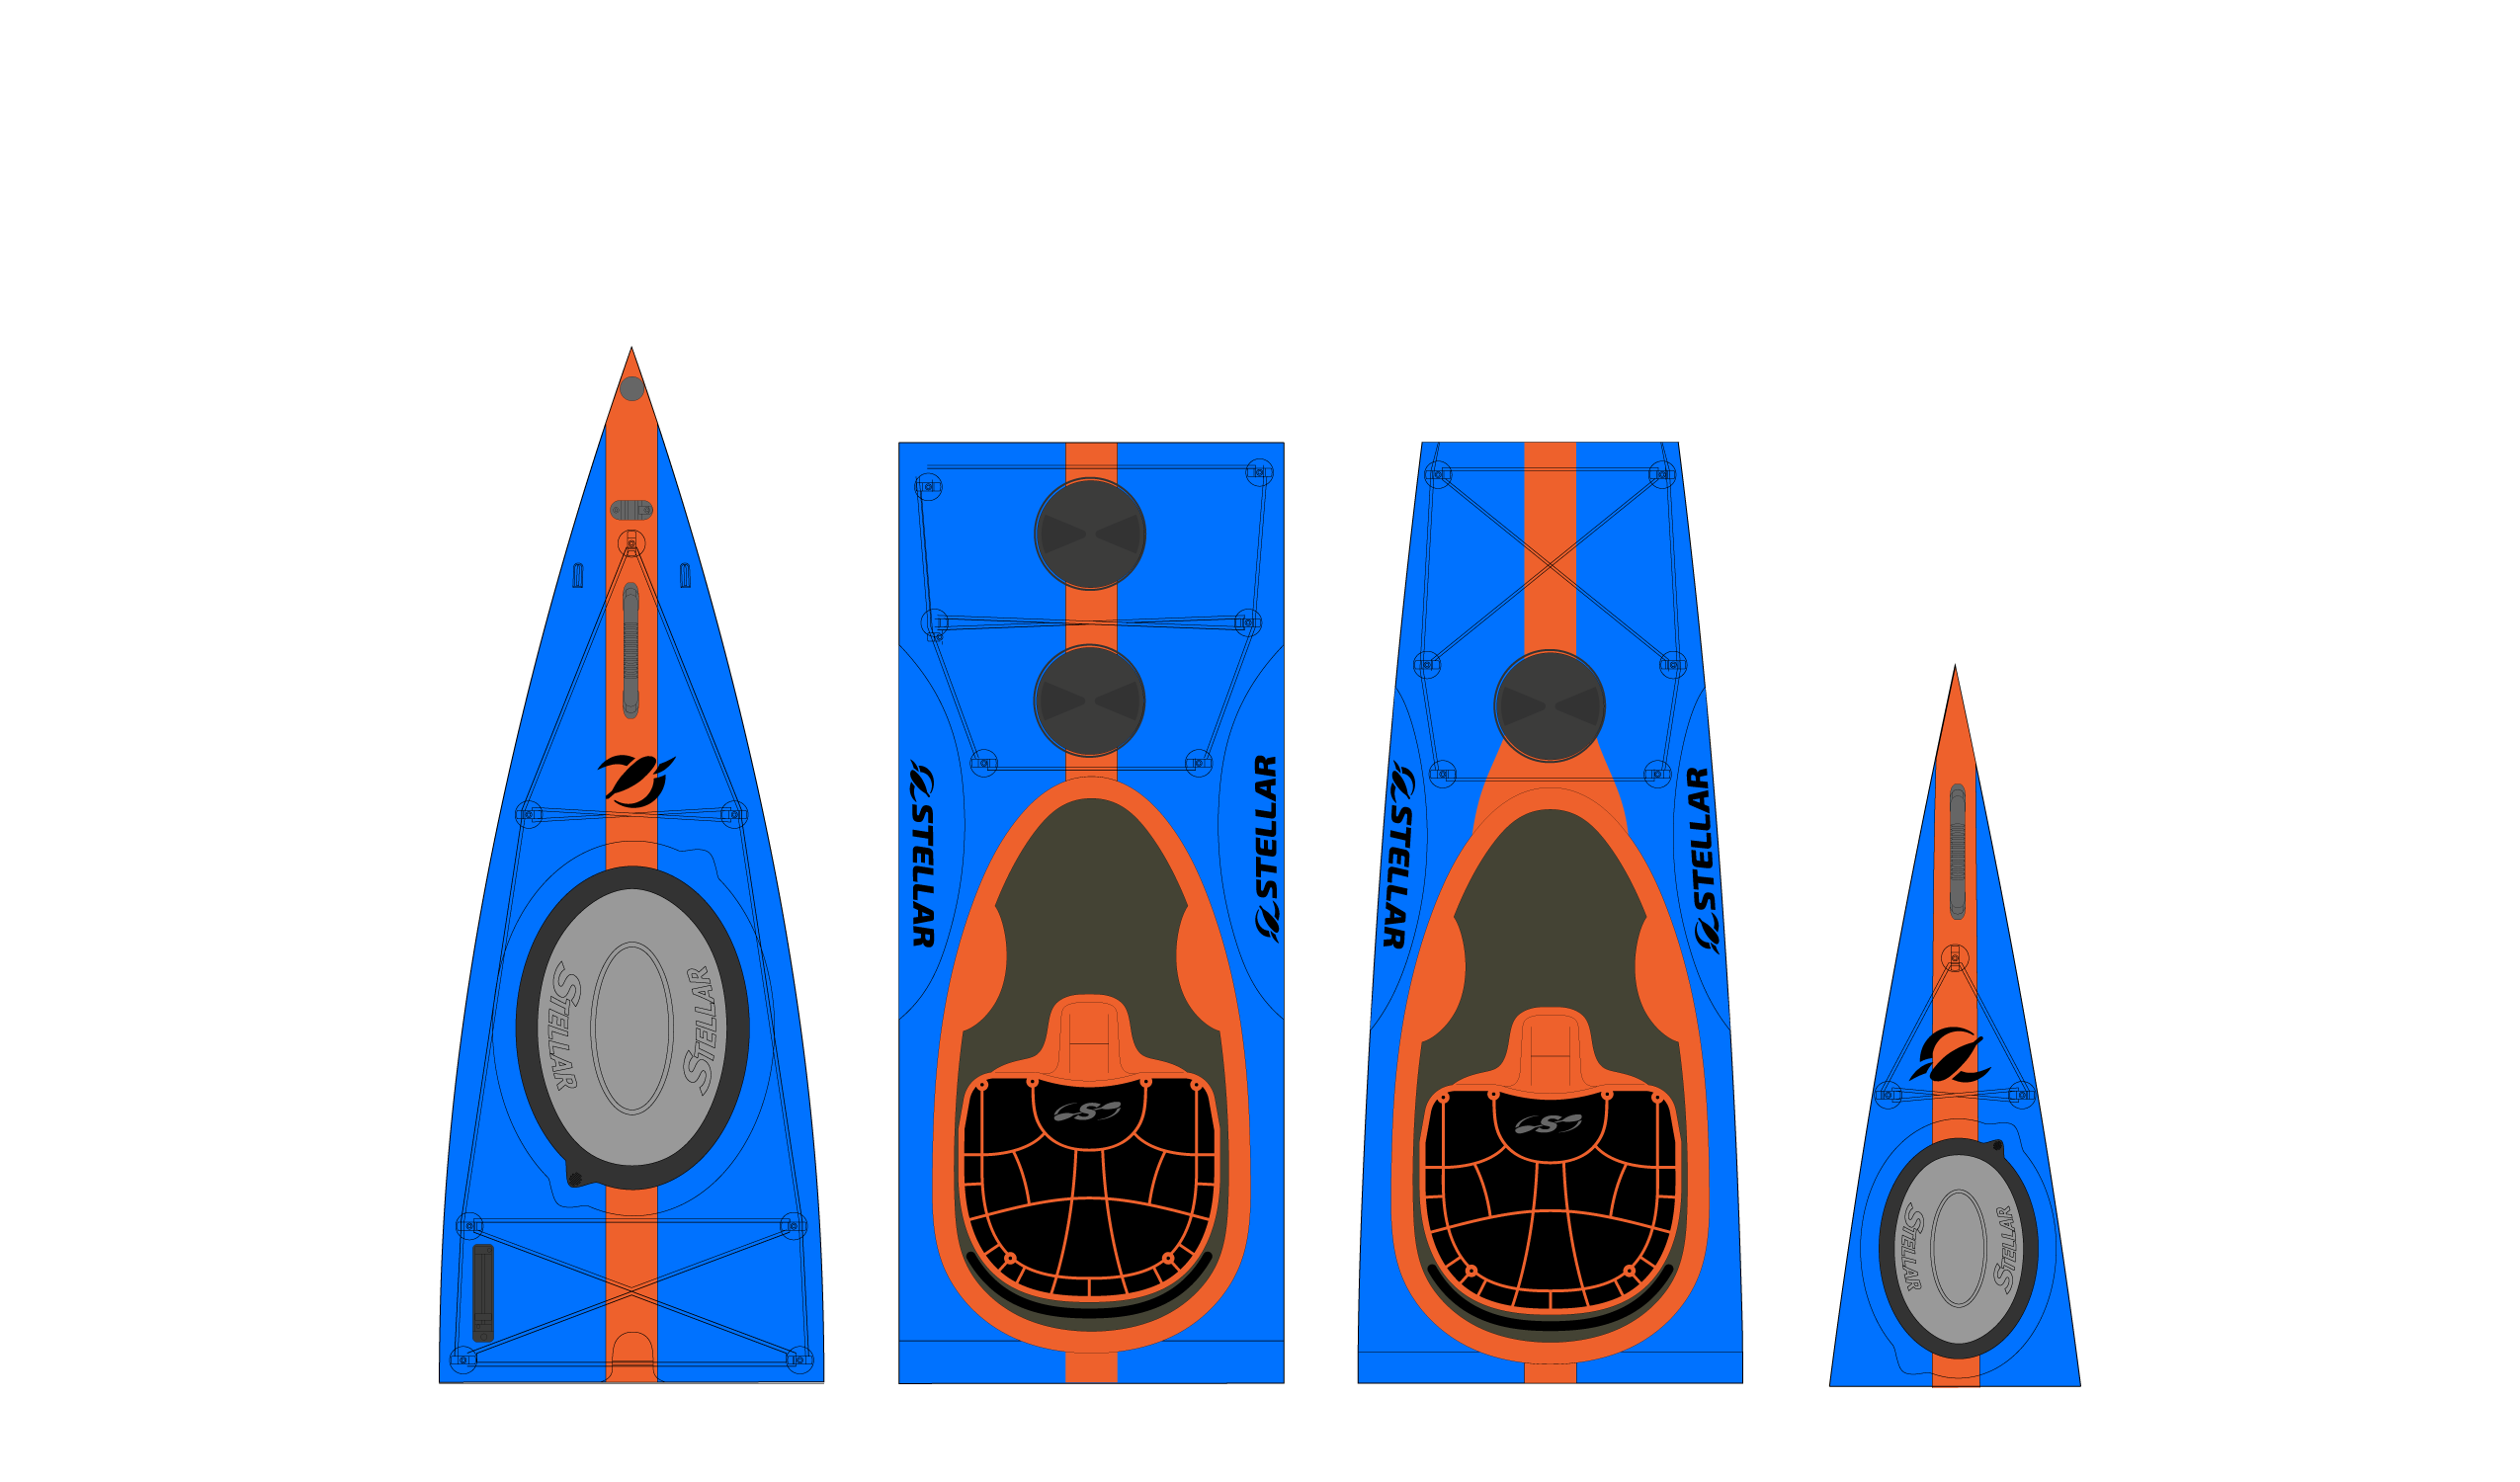 ST19 Mod-Multisport, divisibile-tandem/solo blu arancione